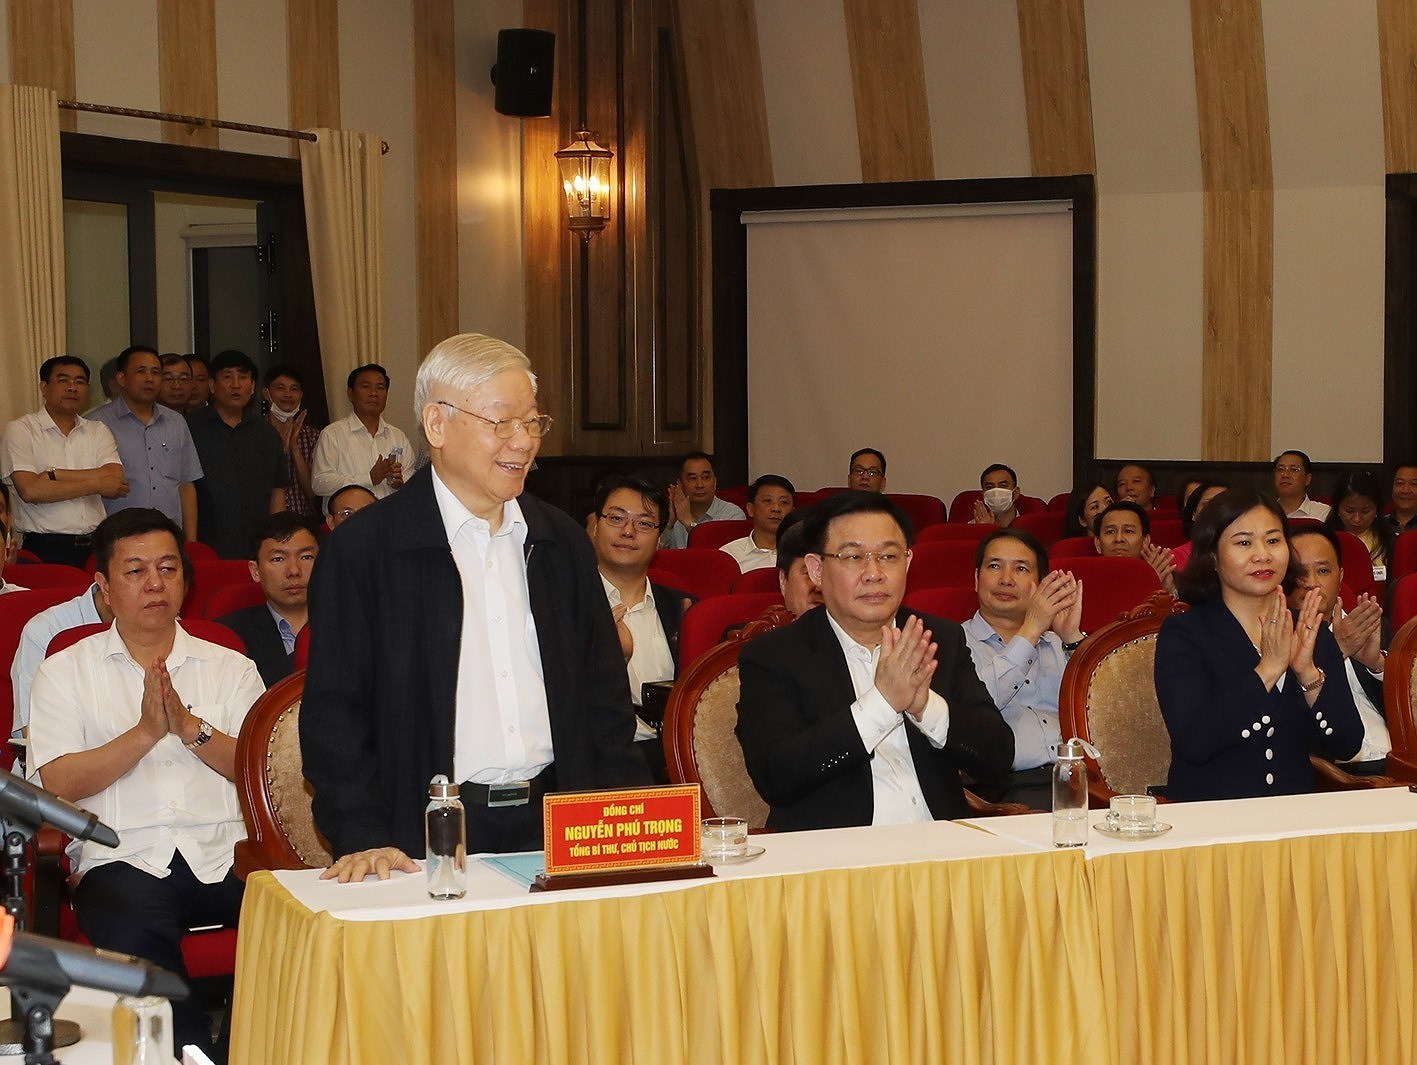 Resalta apoyo unanime del pueblo a maximo dirigente vietnamita hinh anh 1